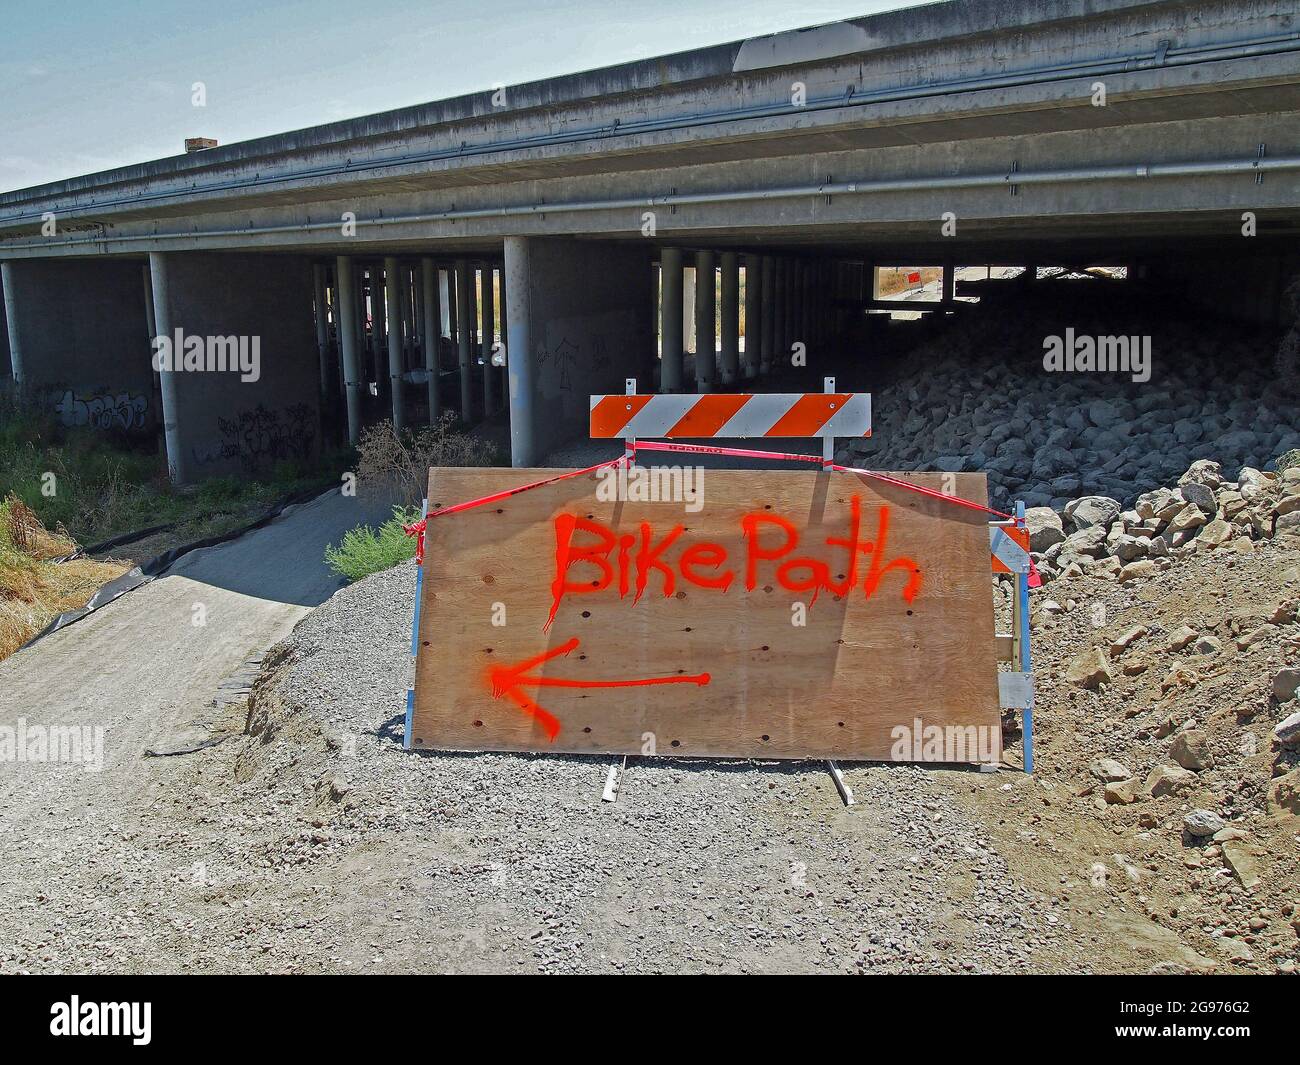 Bike Path détourne le panneau en forme de flèche de la piste d'Alameda Creek à Alameda creek, sous le pont autoroutier de l'I-880, en raison de la réapplication du pont, travaux d'infrastructure. Union City, Californie Banque D'Images